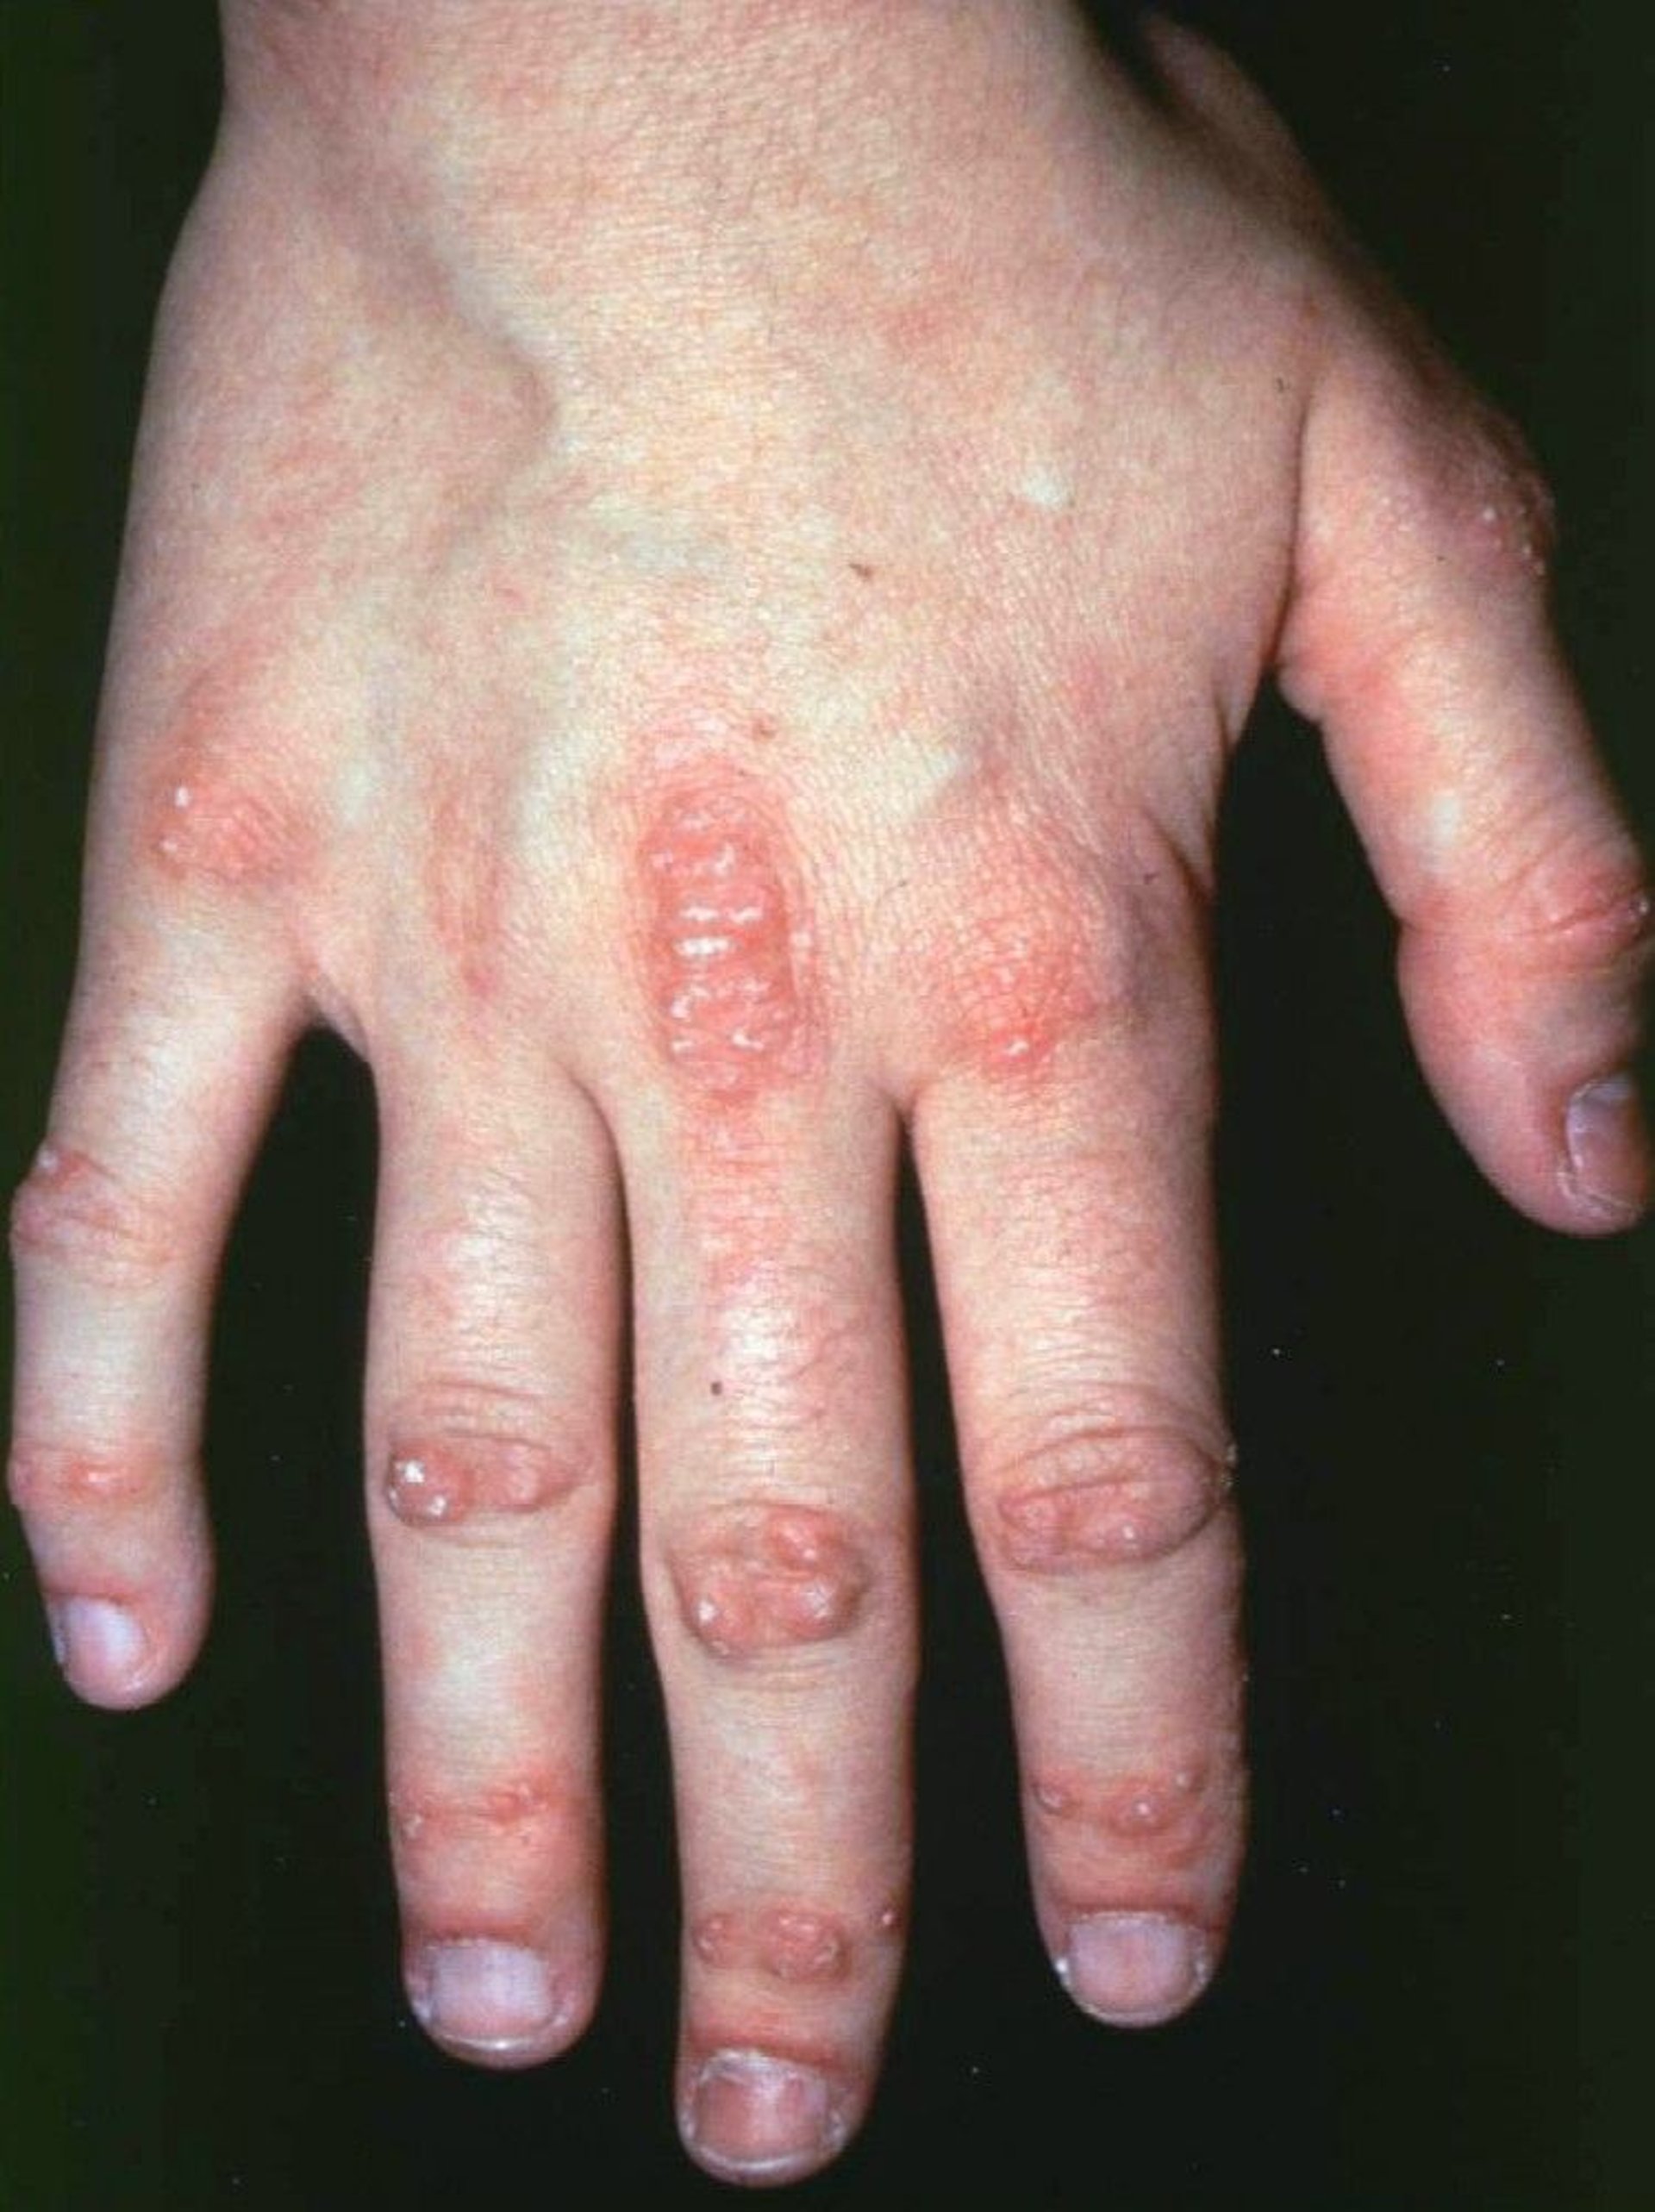 Hand Symptoms in Dermatomyositis